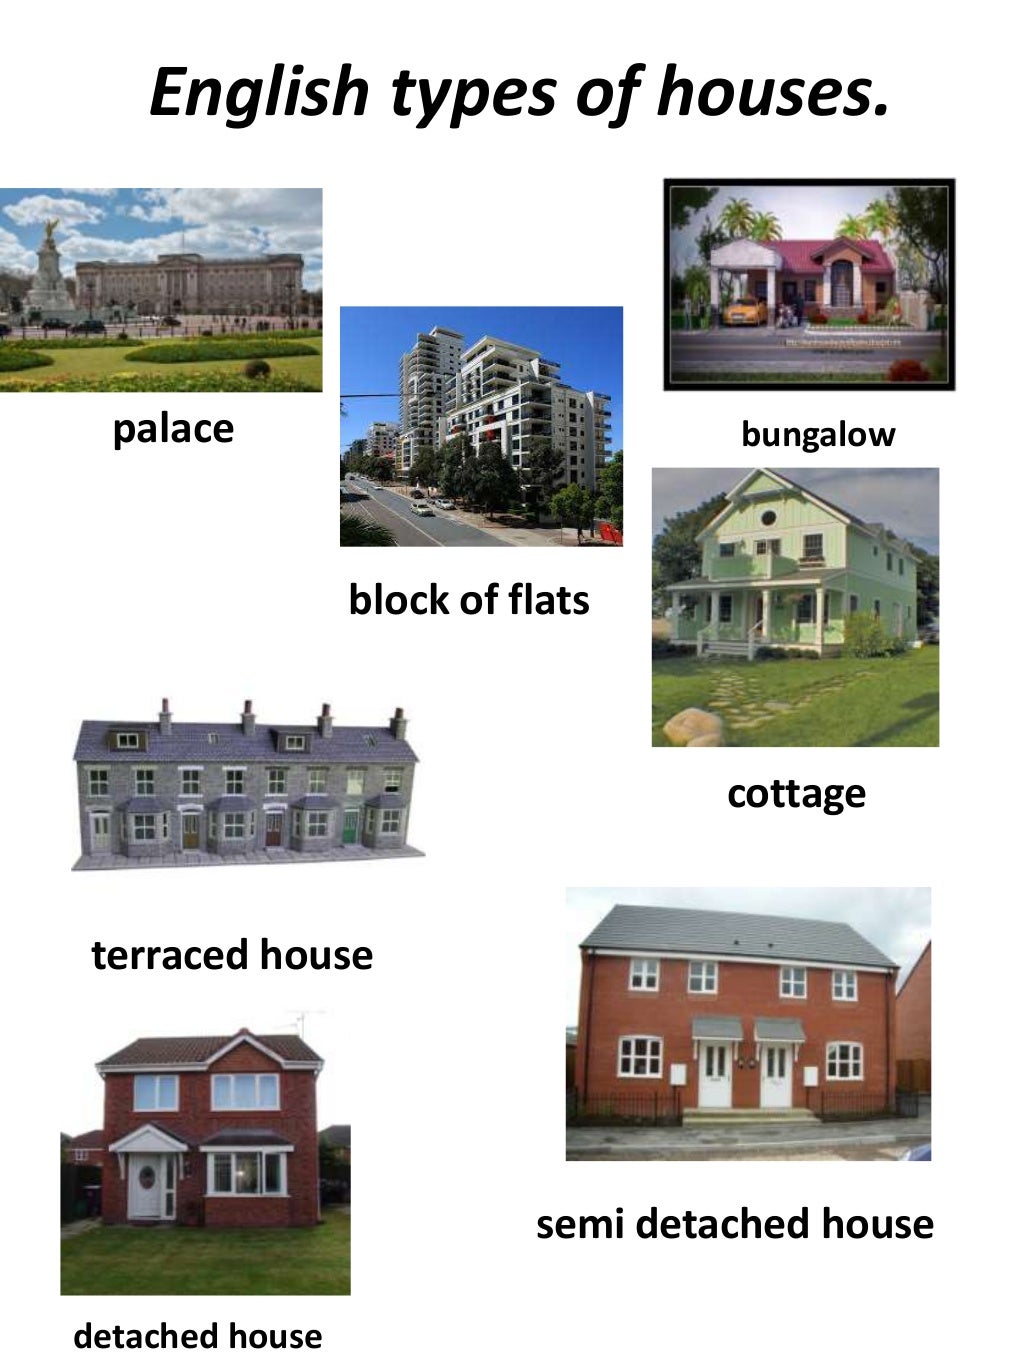 Название домов на английском. Типы домов на английском. Типы домов в Англии. Type of Houses тема по английскому. Типы жилищ на английском языке.